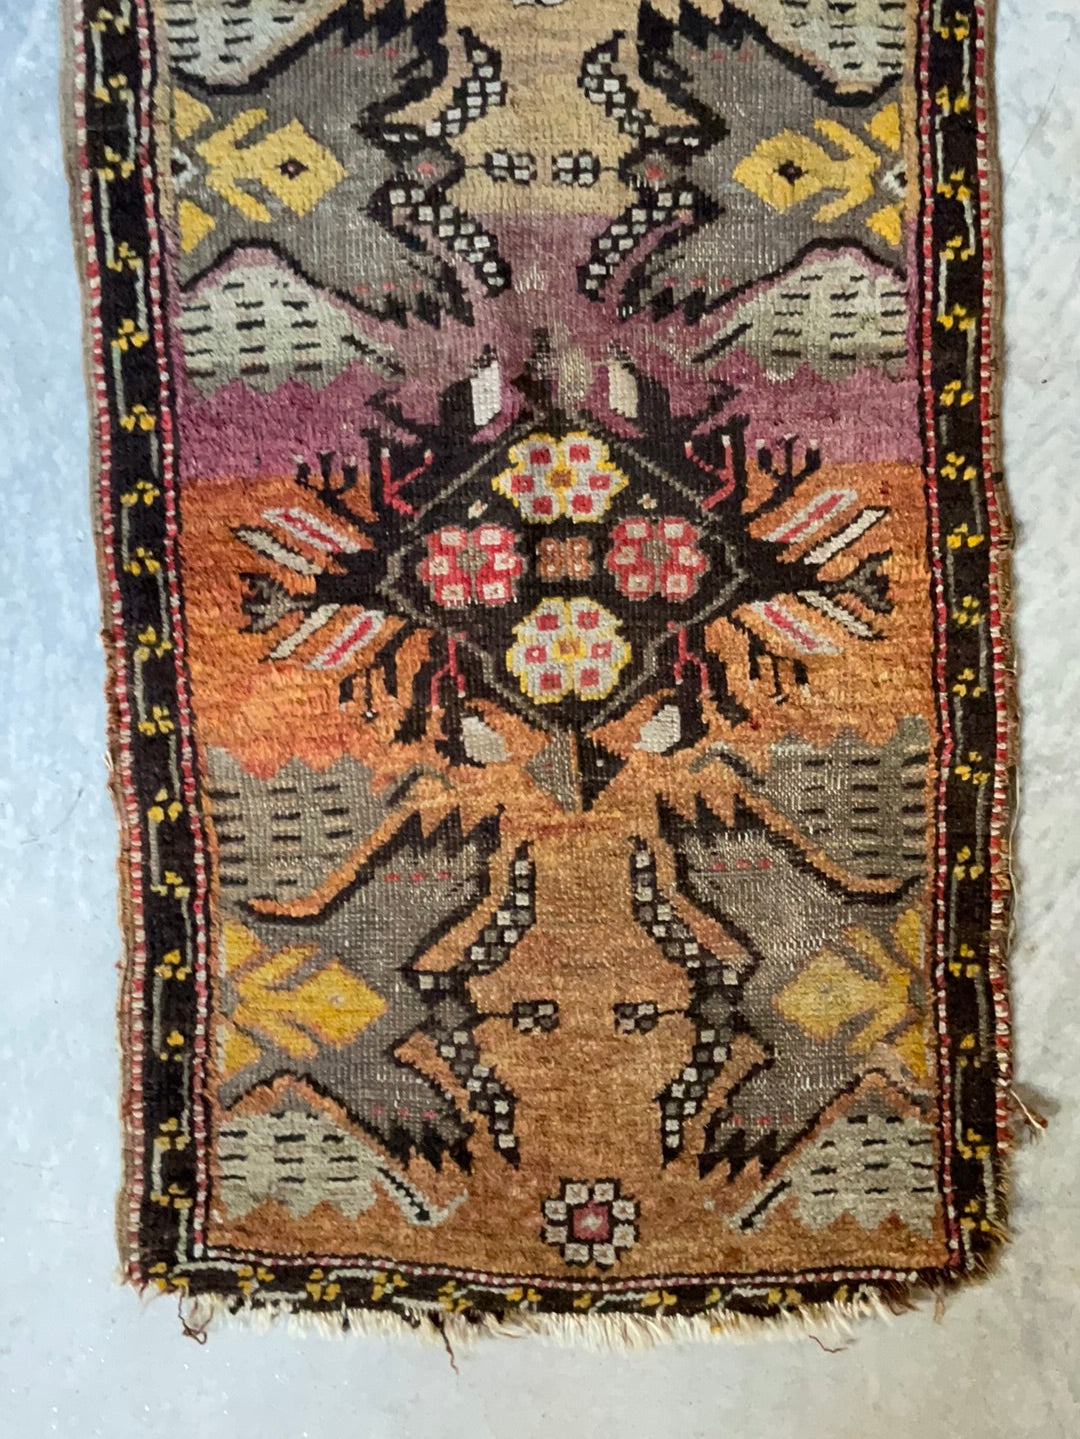 Antique Turkish Scatter Rug